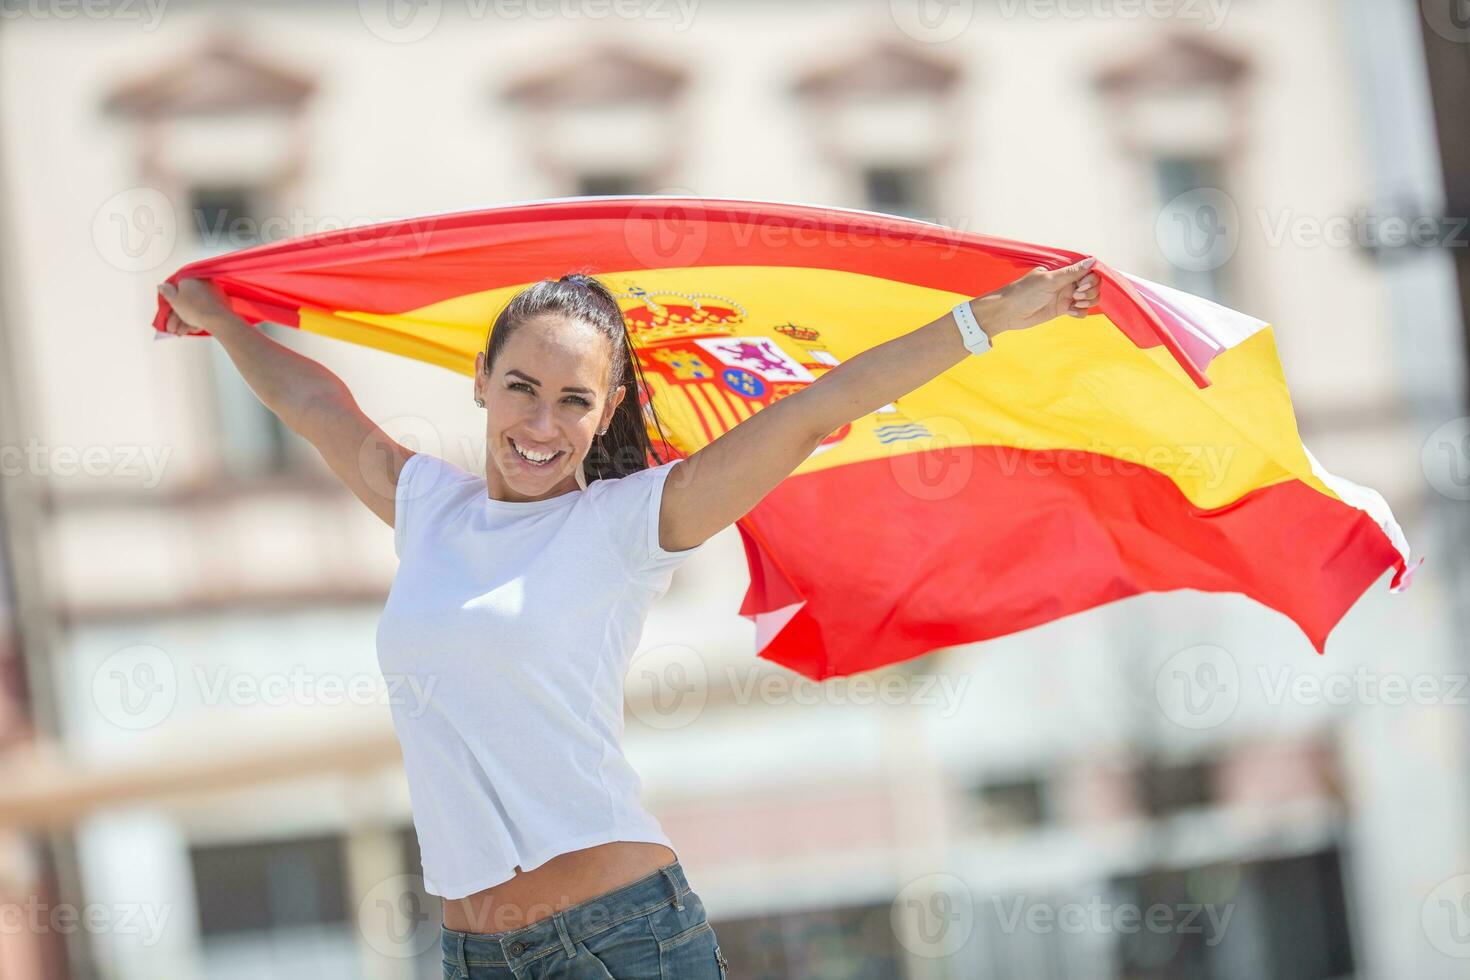 magnifique fille détient une Espagnol drapeau dans sa mains derrière son, applaudissement sur une rue photo